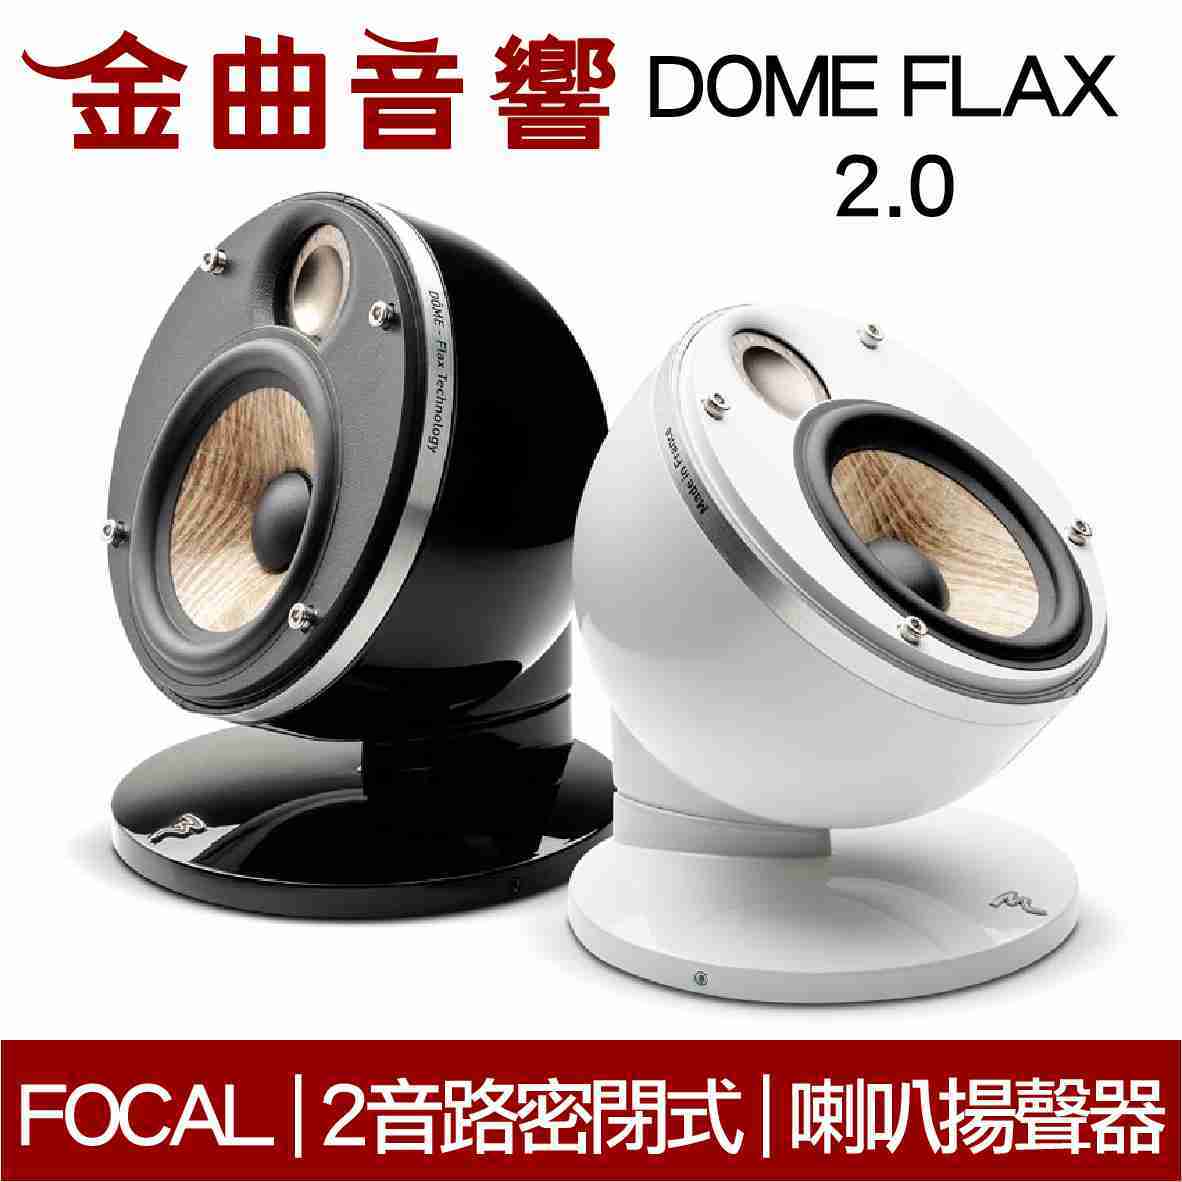 FOCAL Dome FLAX 2.0 雙色可選 迷你 微型 聲道喇叭揚聲器 (一對) | 金曲音響